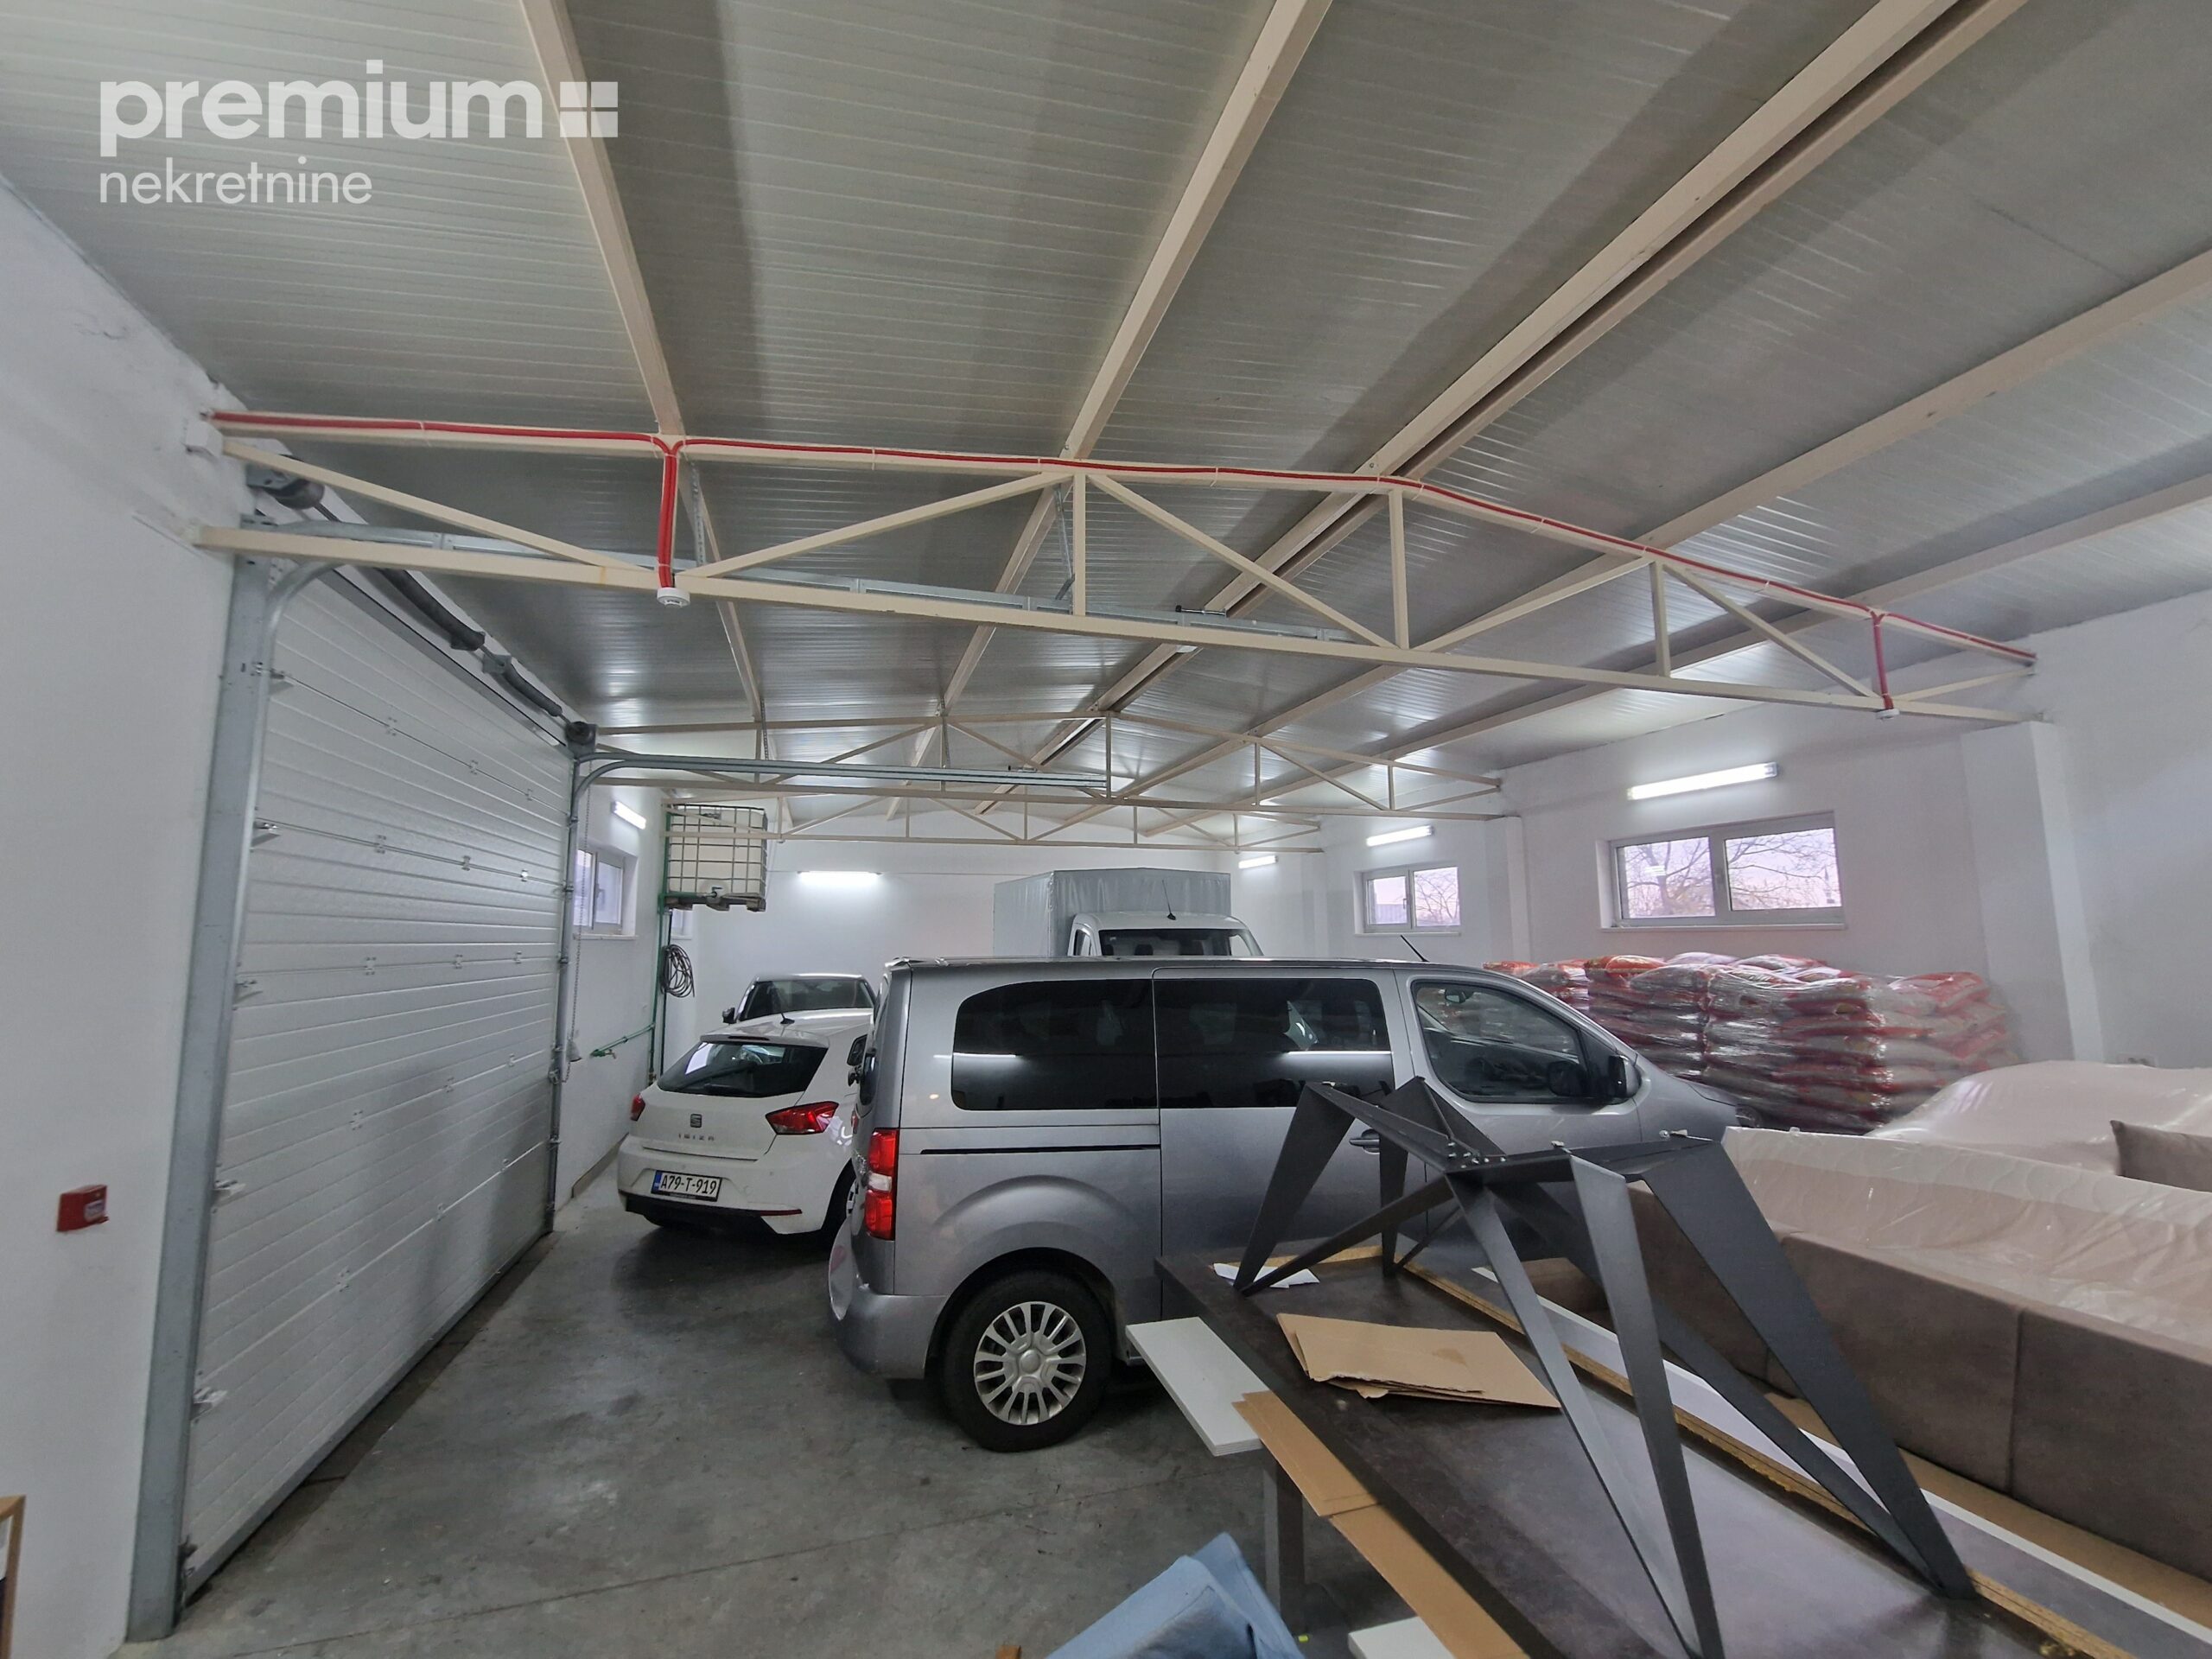 Poslovni prostor – hala, kancelarija i parking